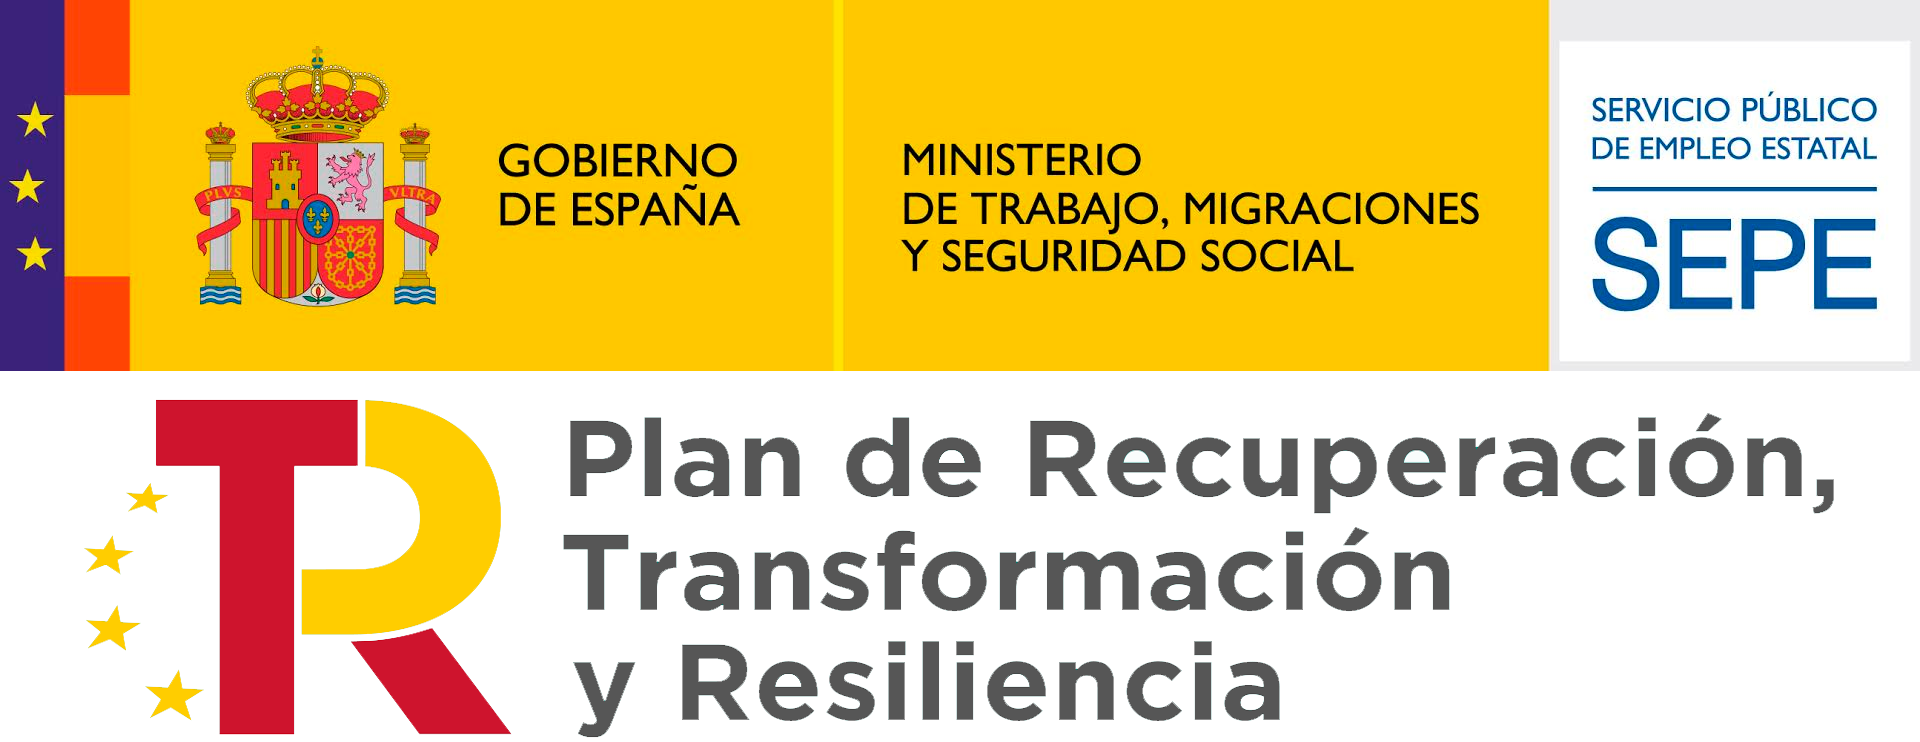 Plan recuperación transformación y resiliencia